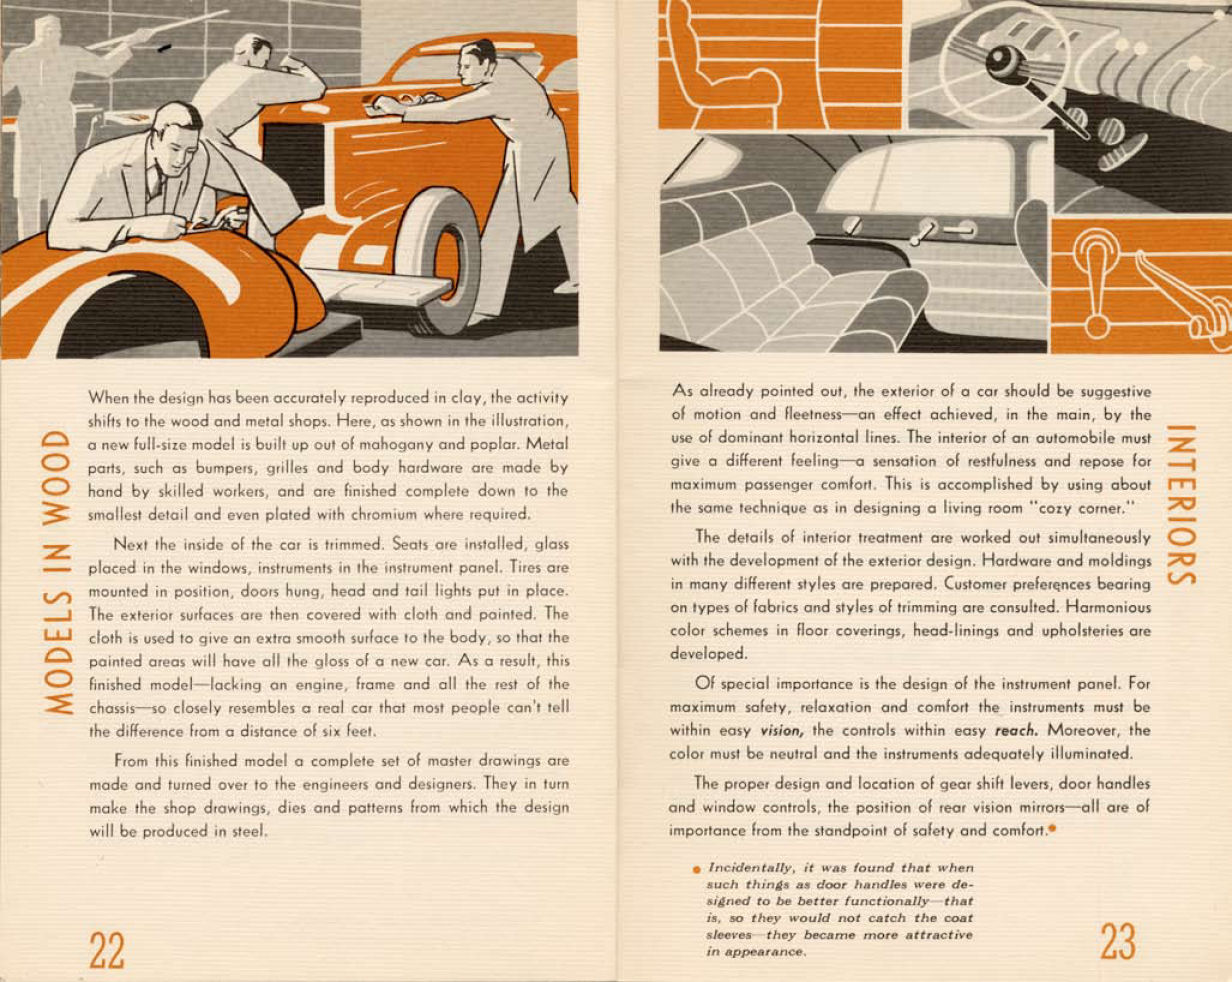 n_1938-Modes and Motors-22-23.jpg